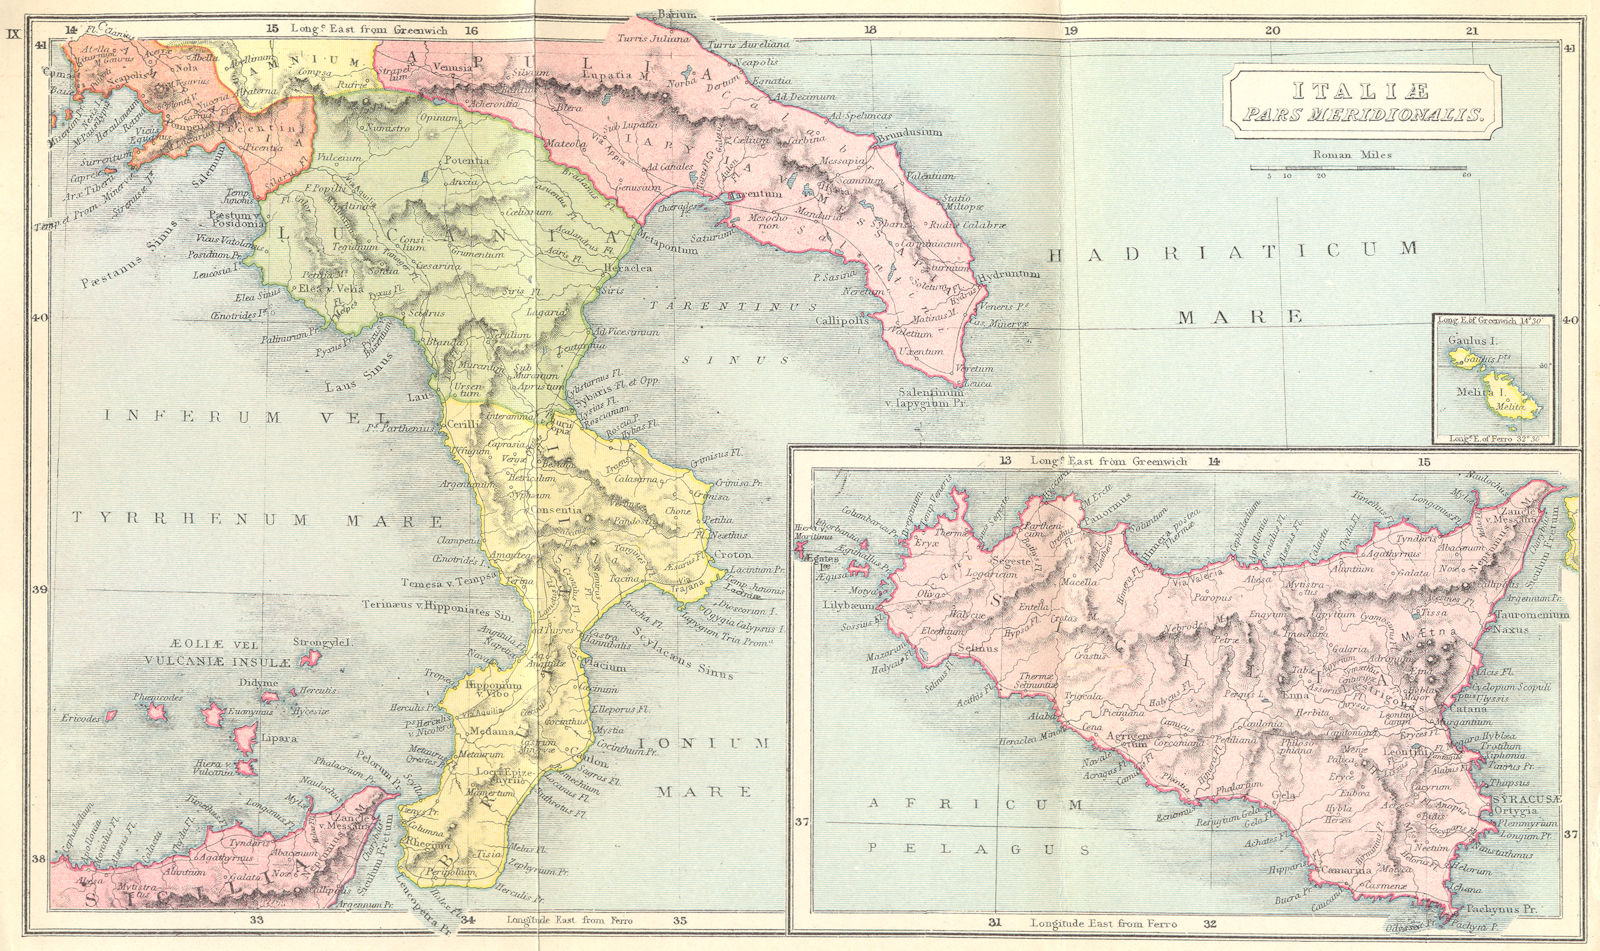 ITALY. Italiae Pars Meridionalis; Sicilia Roman 1908 old antique map chart